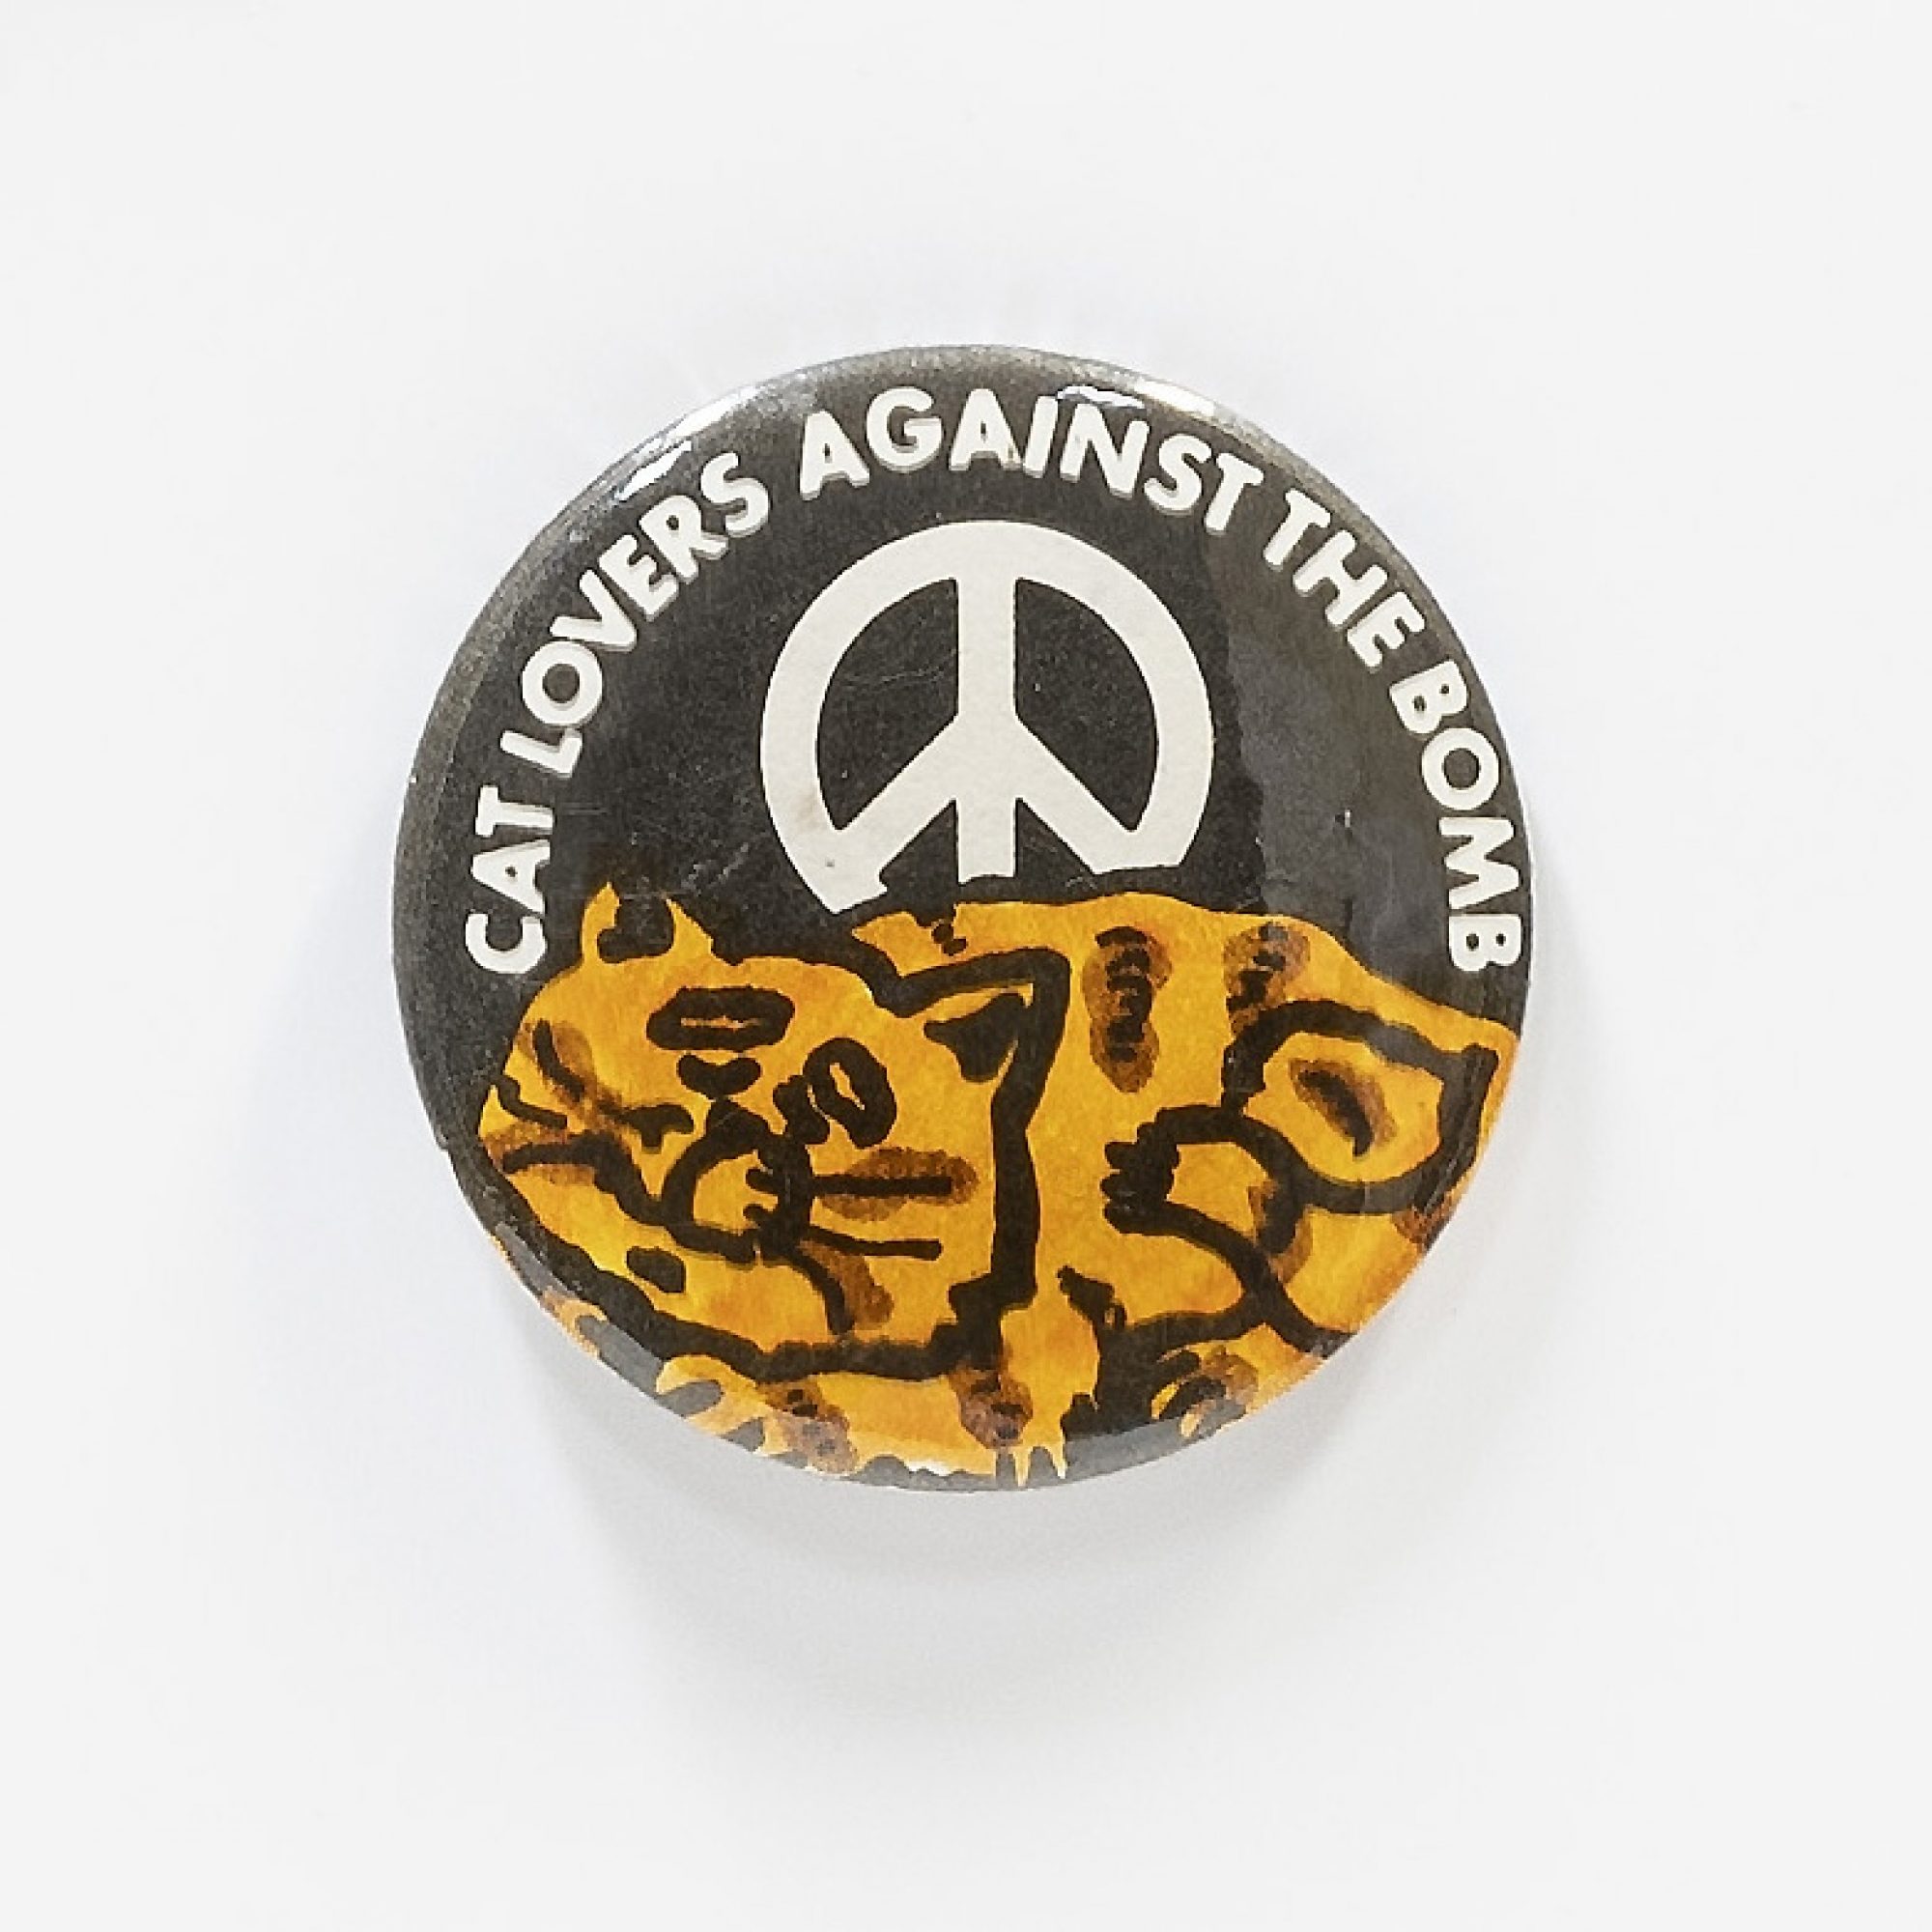 VINTAGE Svezia arma nucleare CND disarmo bambini vogliono La pace colomba pin badge 